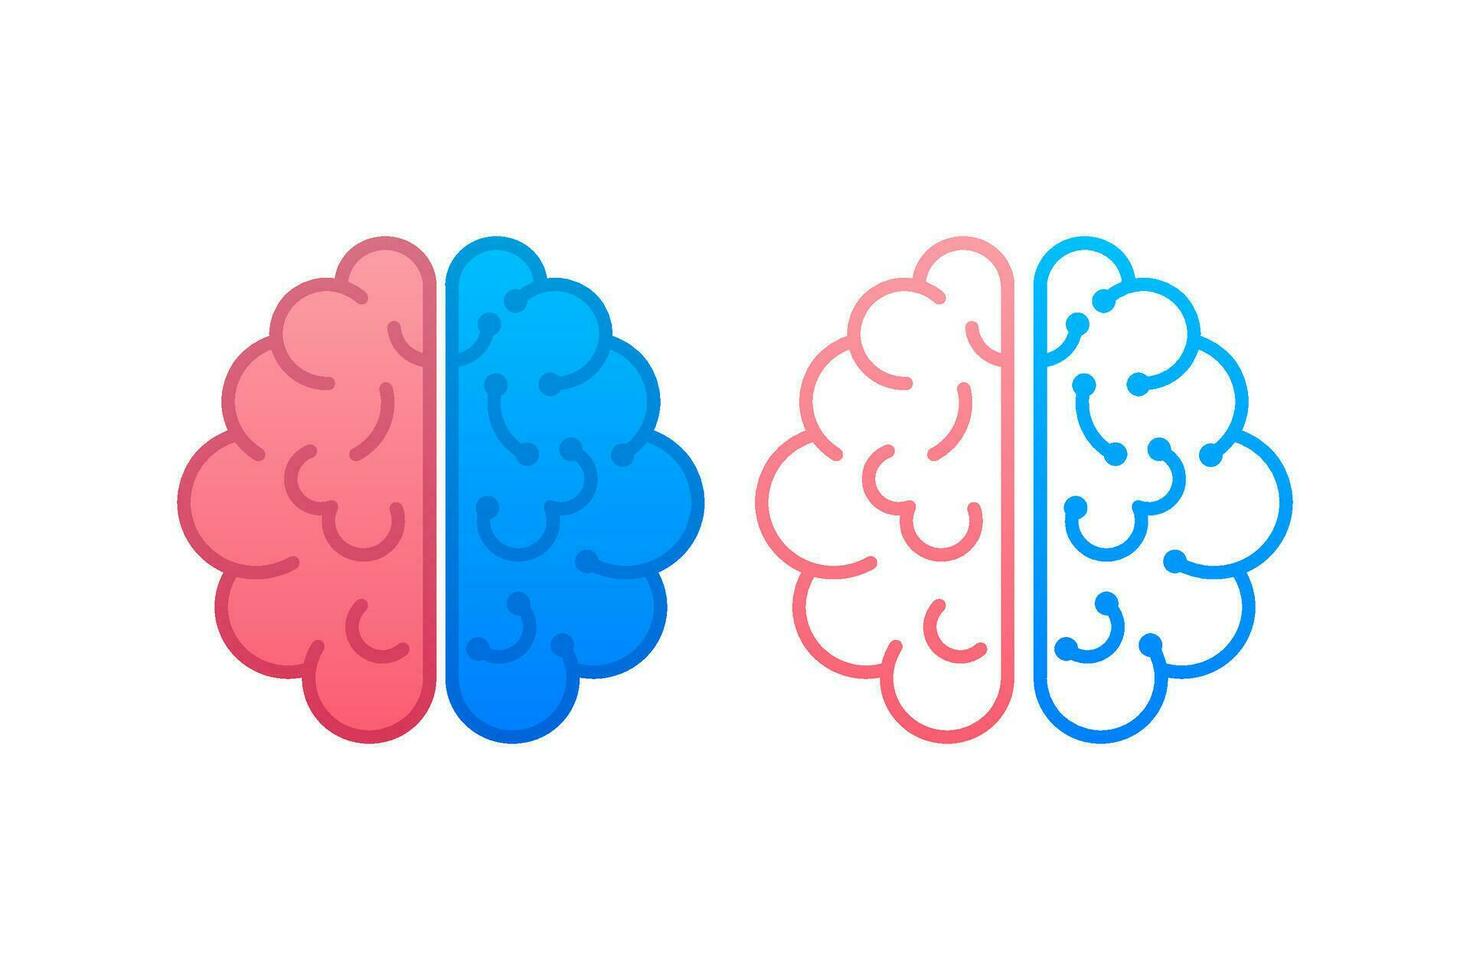 Gehirn. Digital Gehirn im Hand. neural Netzwerk. iq testen. Brainstorming denken Idee. Vektor Lager Illustration